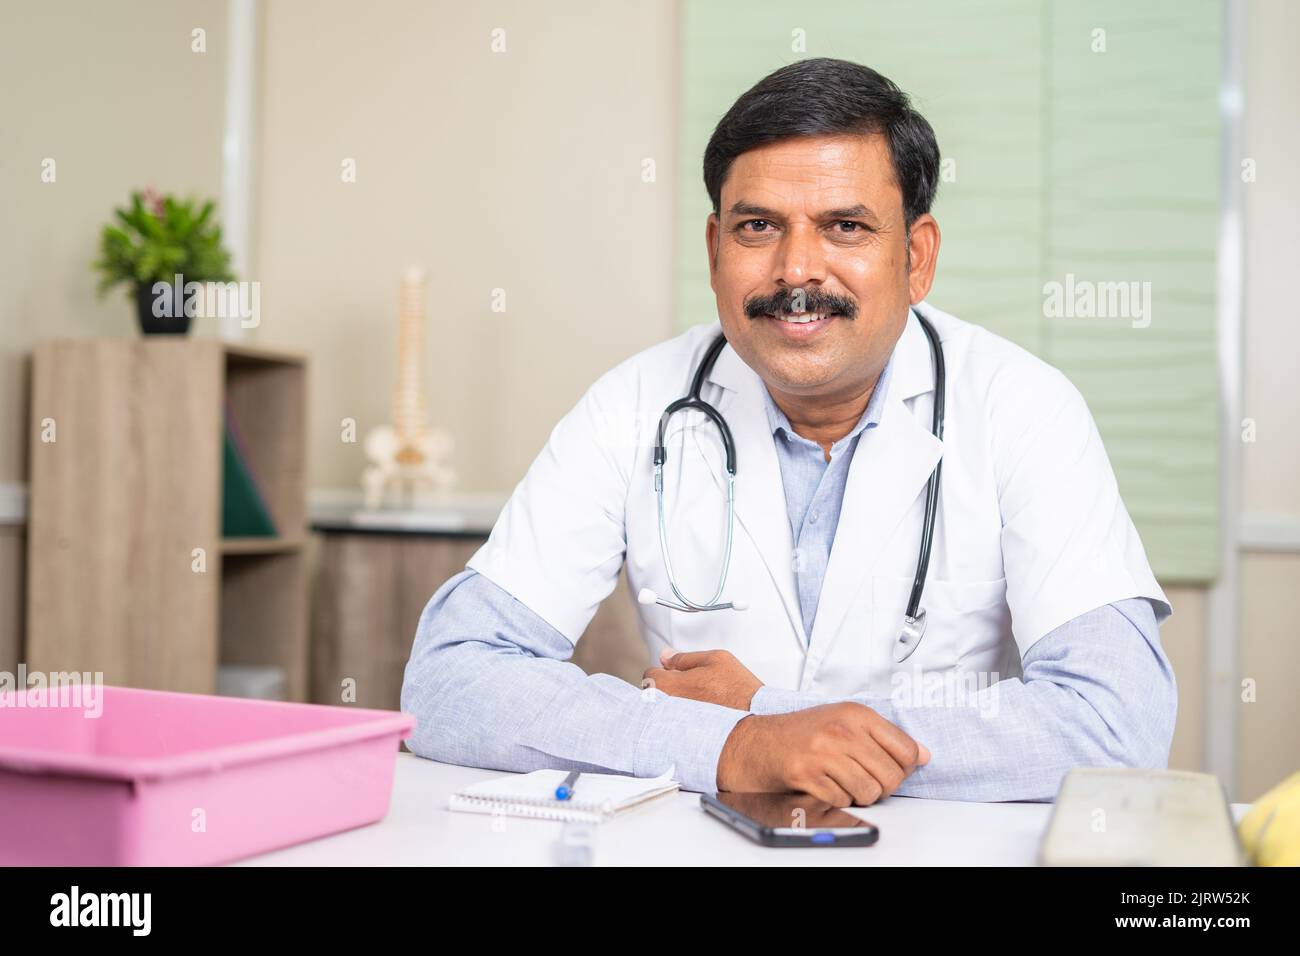 Porträt des Arztes in der Klinik Blick Kamera im Krankenhaus - Konzept der beruflichen Tätigkeit und Gesundheitsversorgung oder medizinische Versorgung Stockfoto